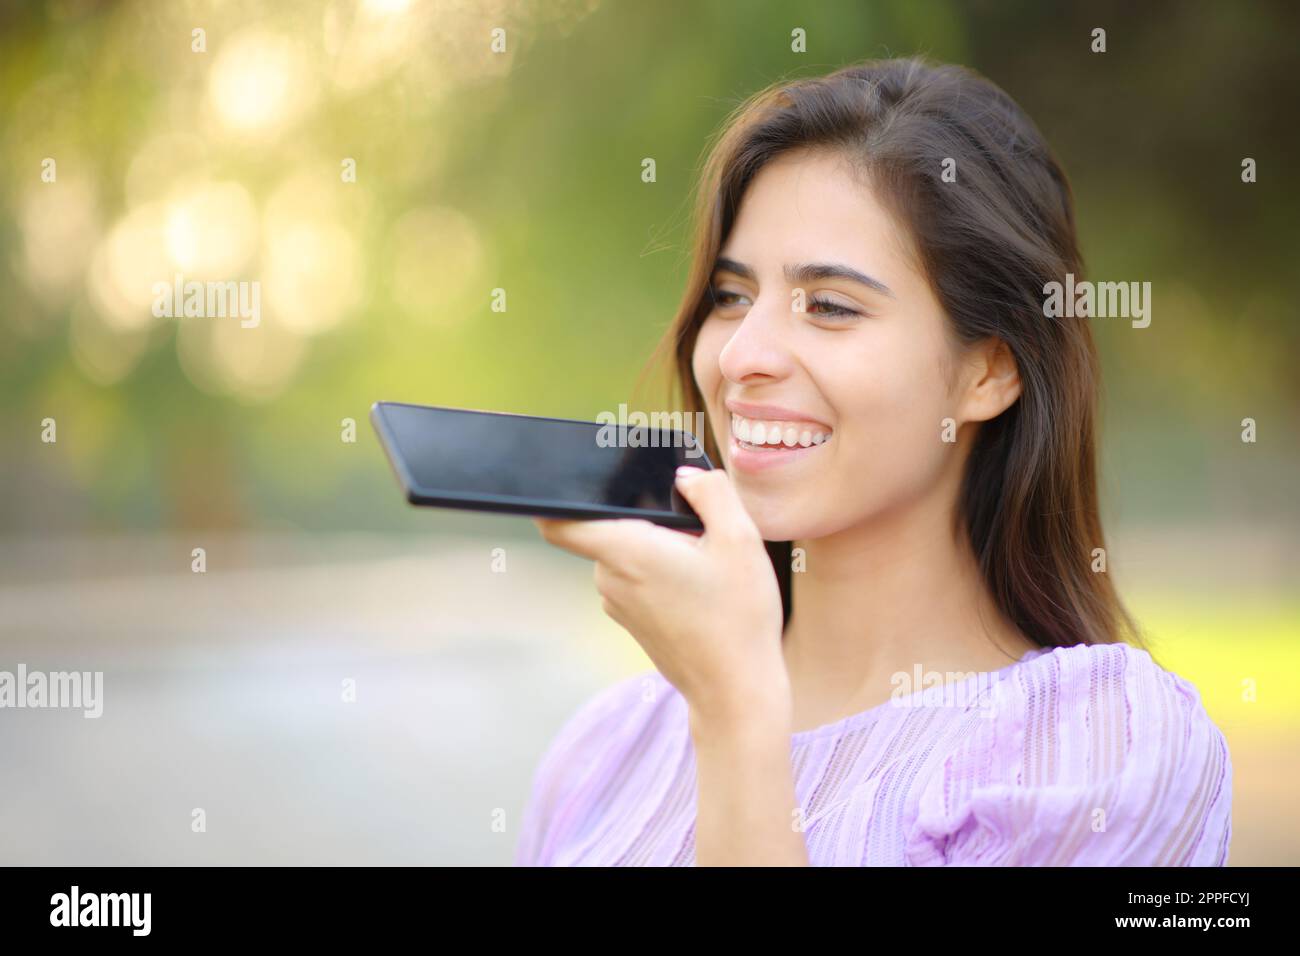 Glückliche Frau, die in einem Park Spracherkennung am Handy benutzt Stockfoto